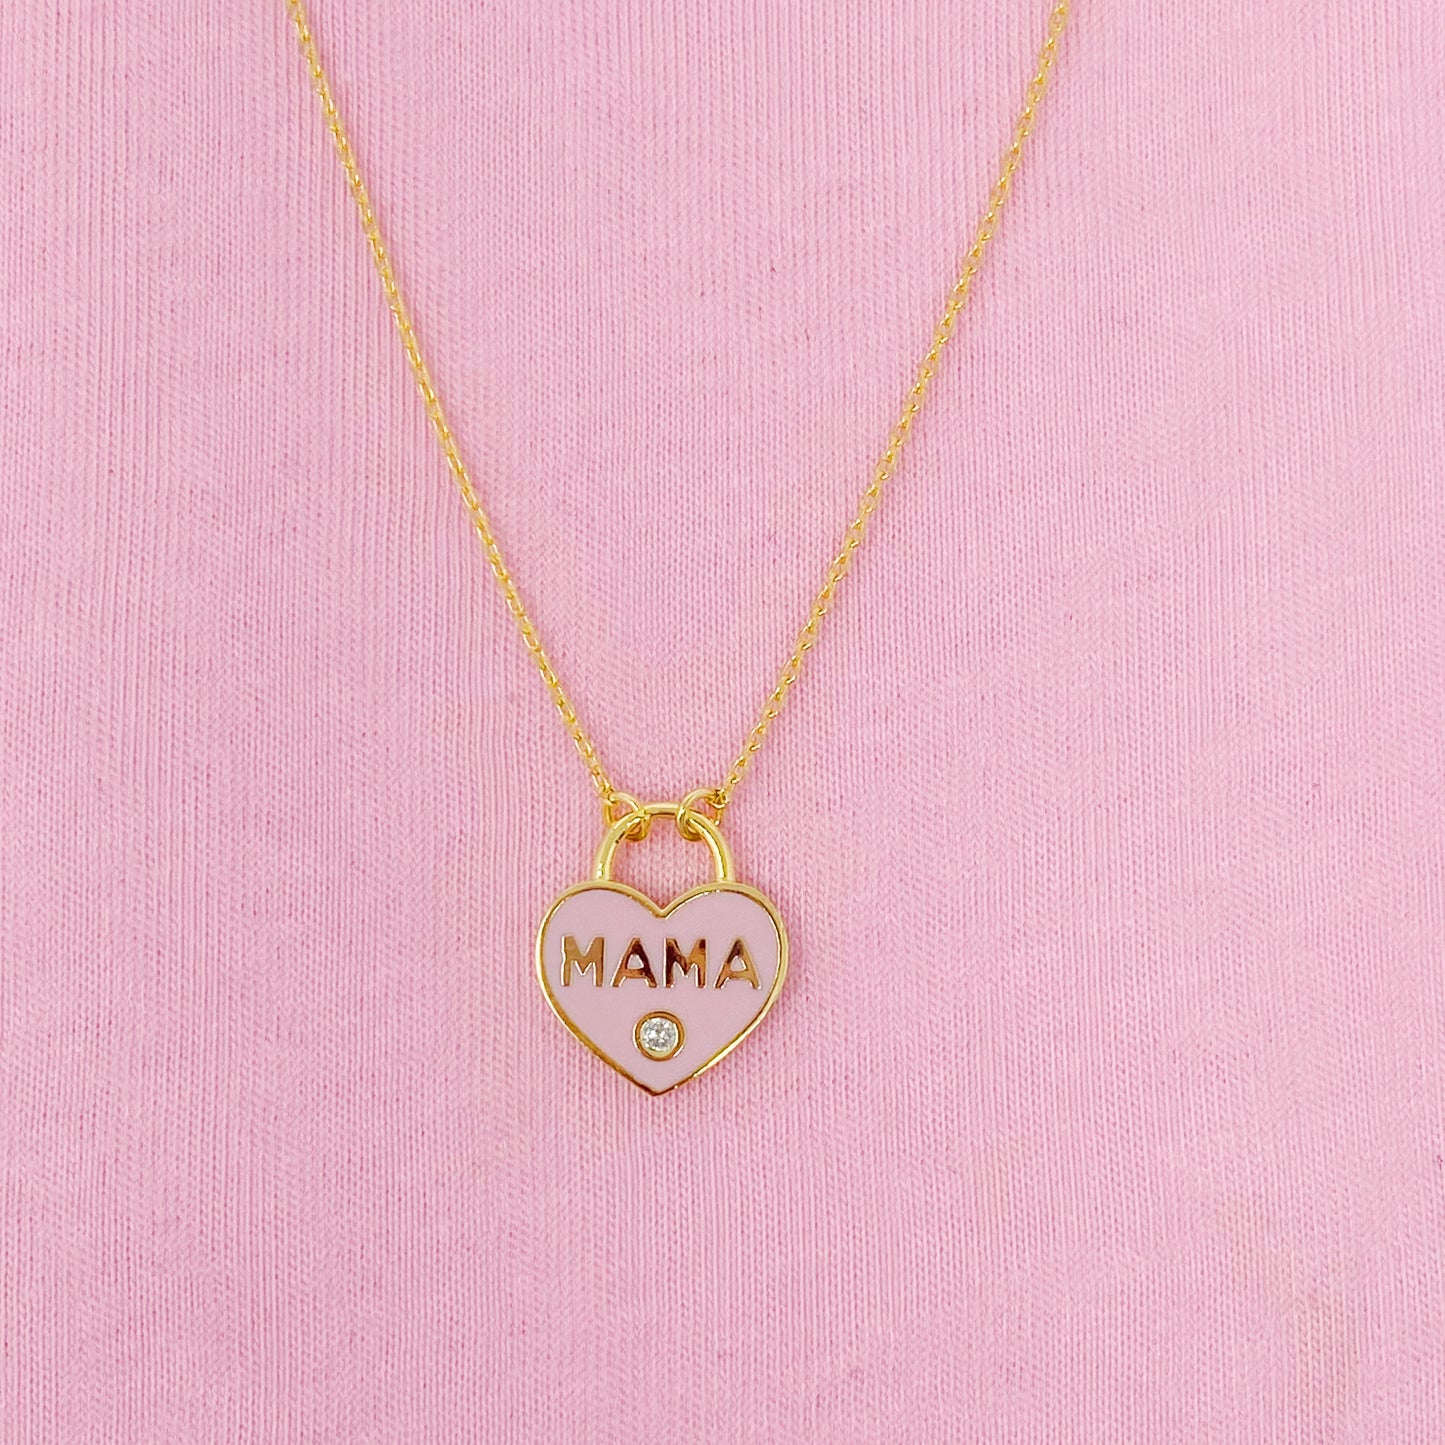 Mama Locket Necklaces